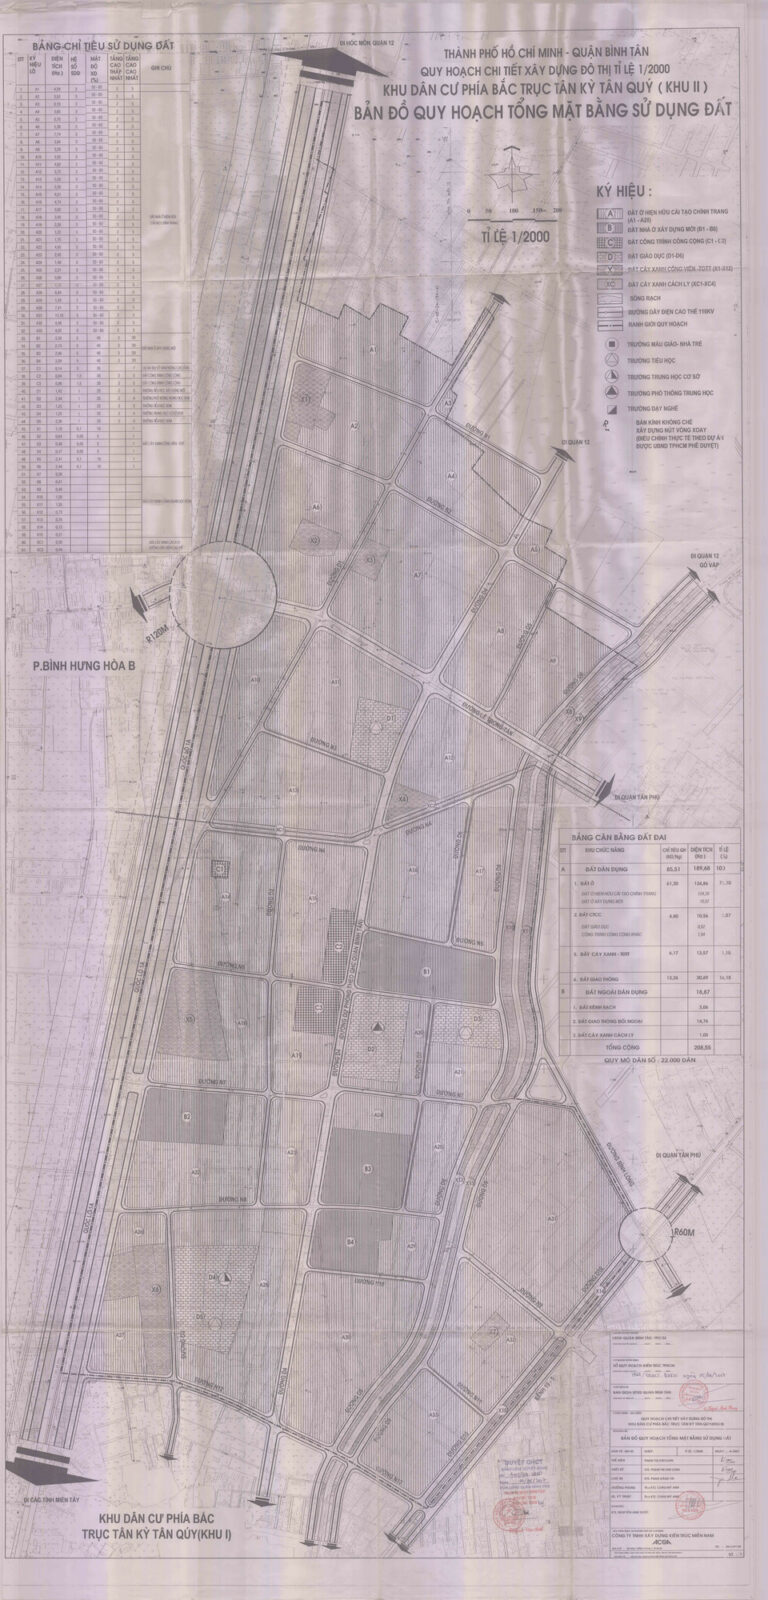 Bản đồ quy hoạch 1/2000 khu dân cư phía Bắc trục Tân Kỳ Tân Quý (khu 2), Quận Bình Tân